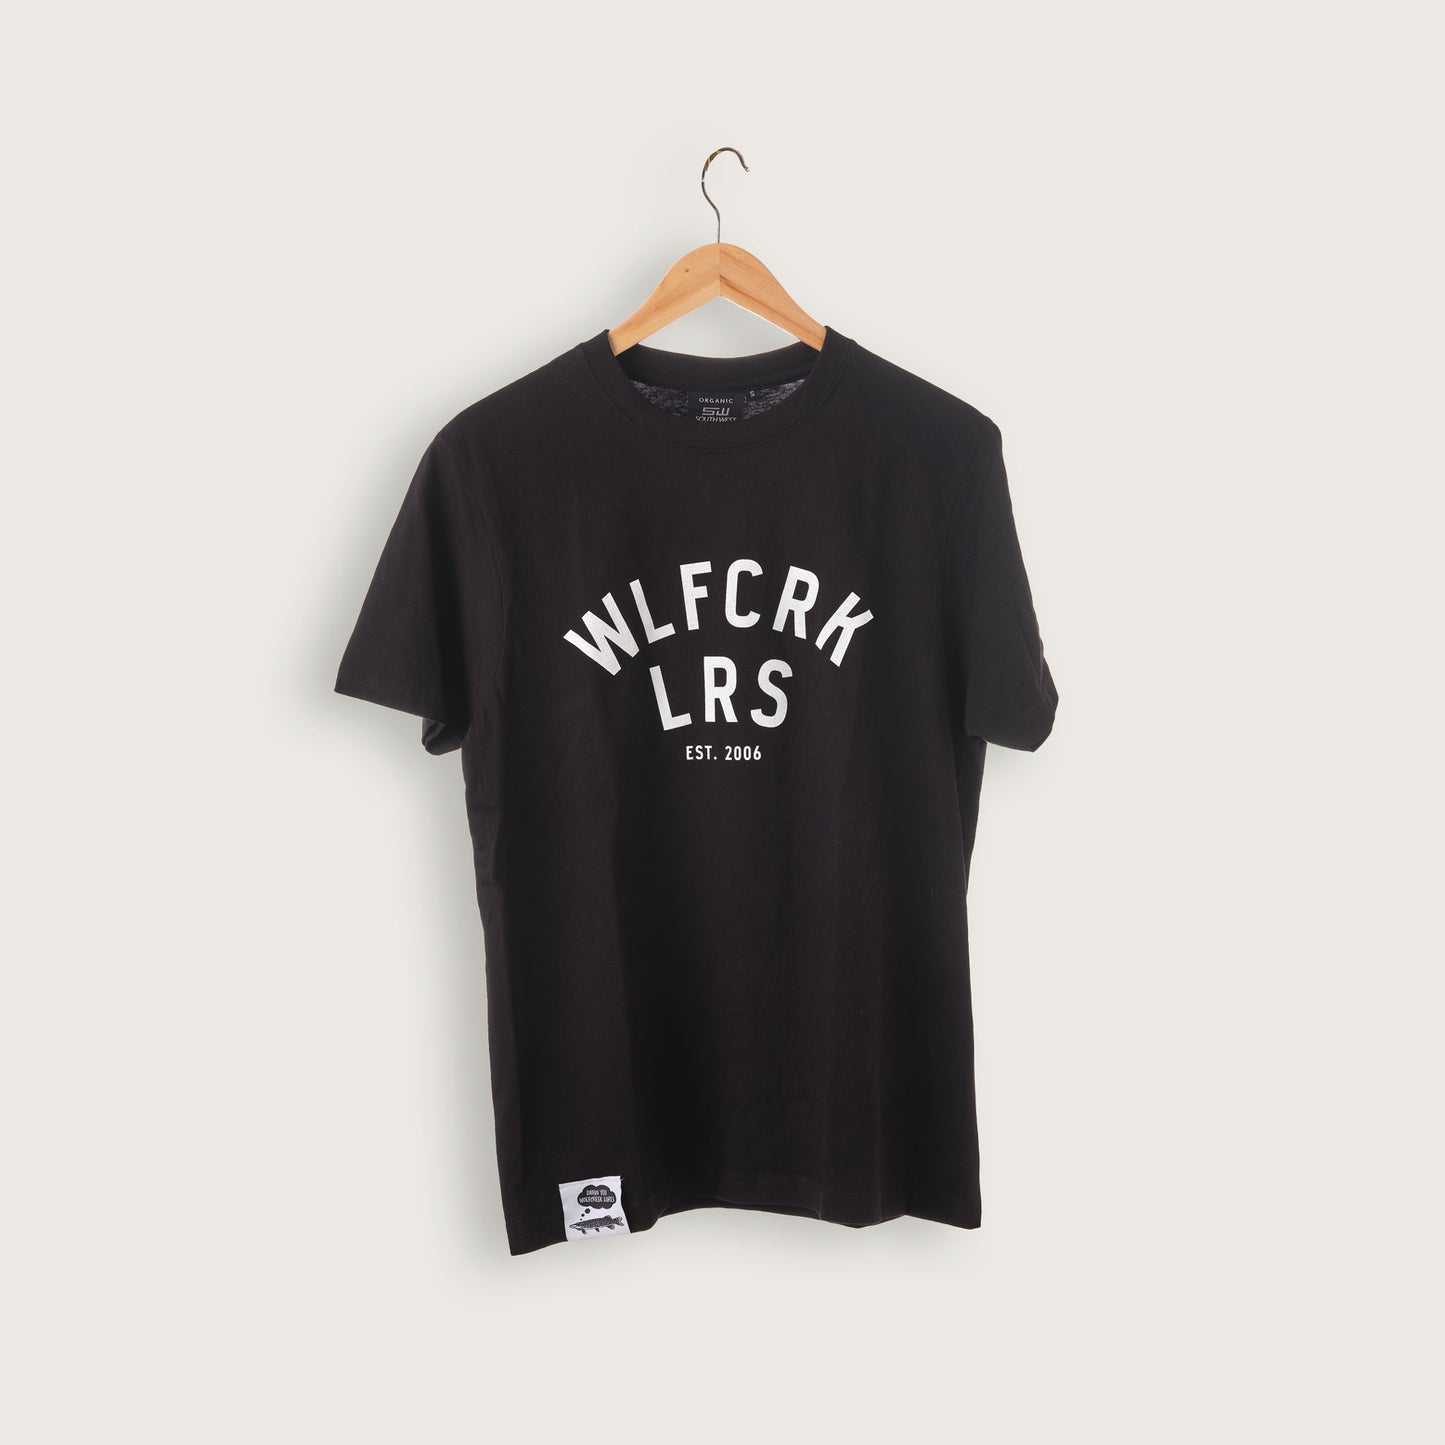 WLFCRK LRS T-Shirt Black